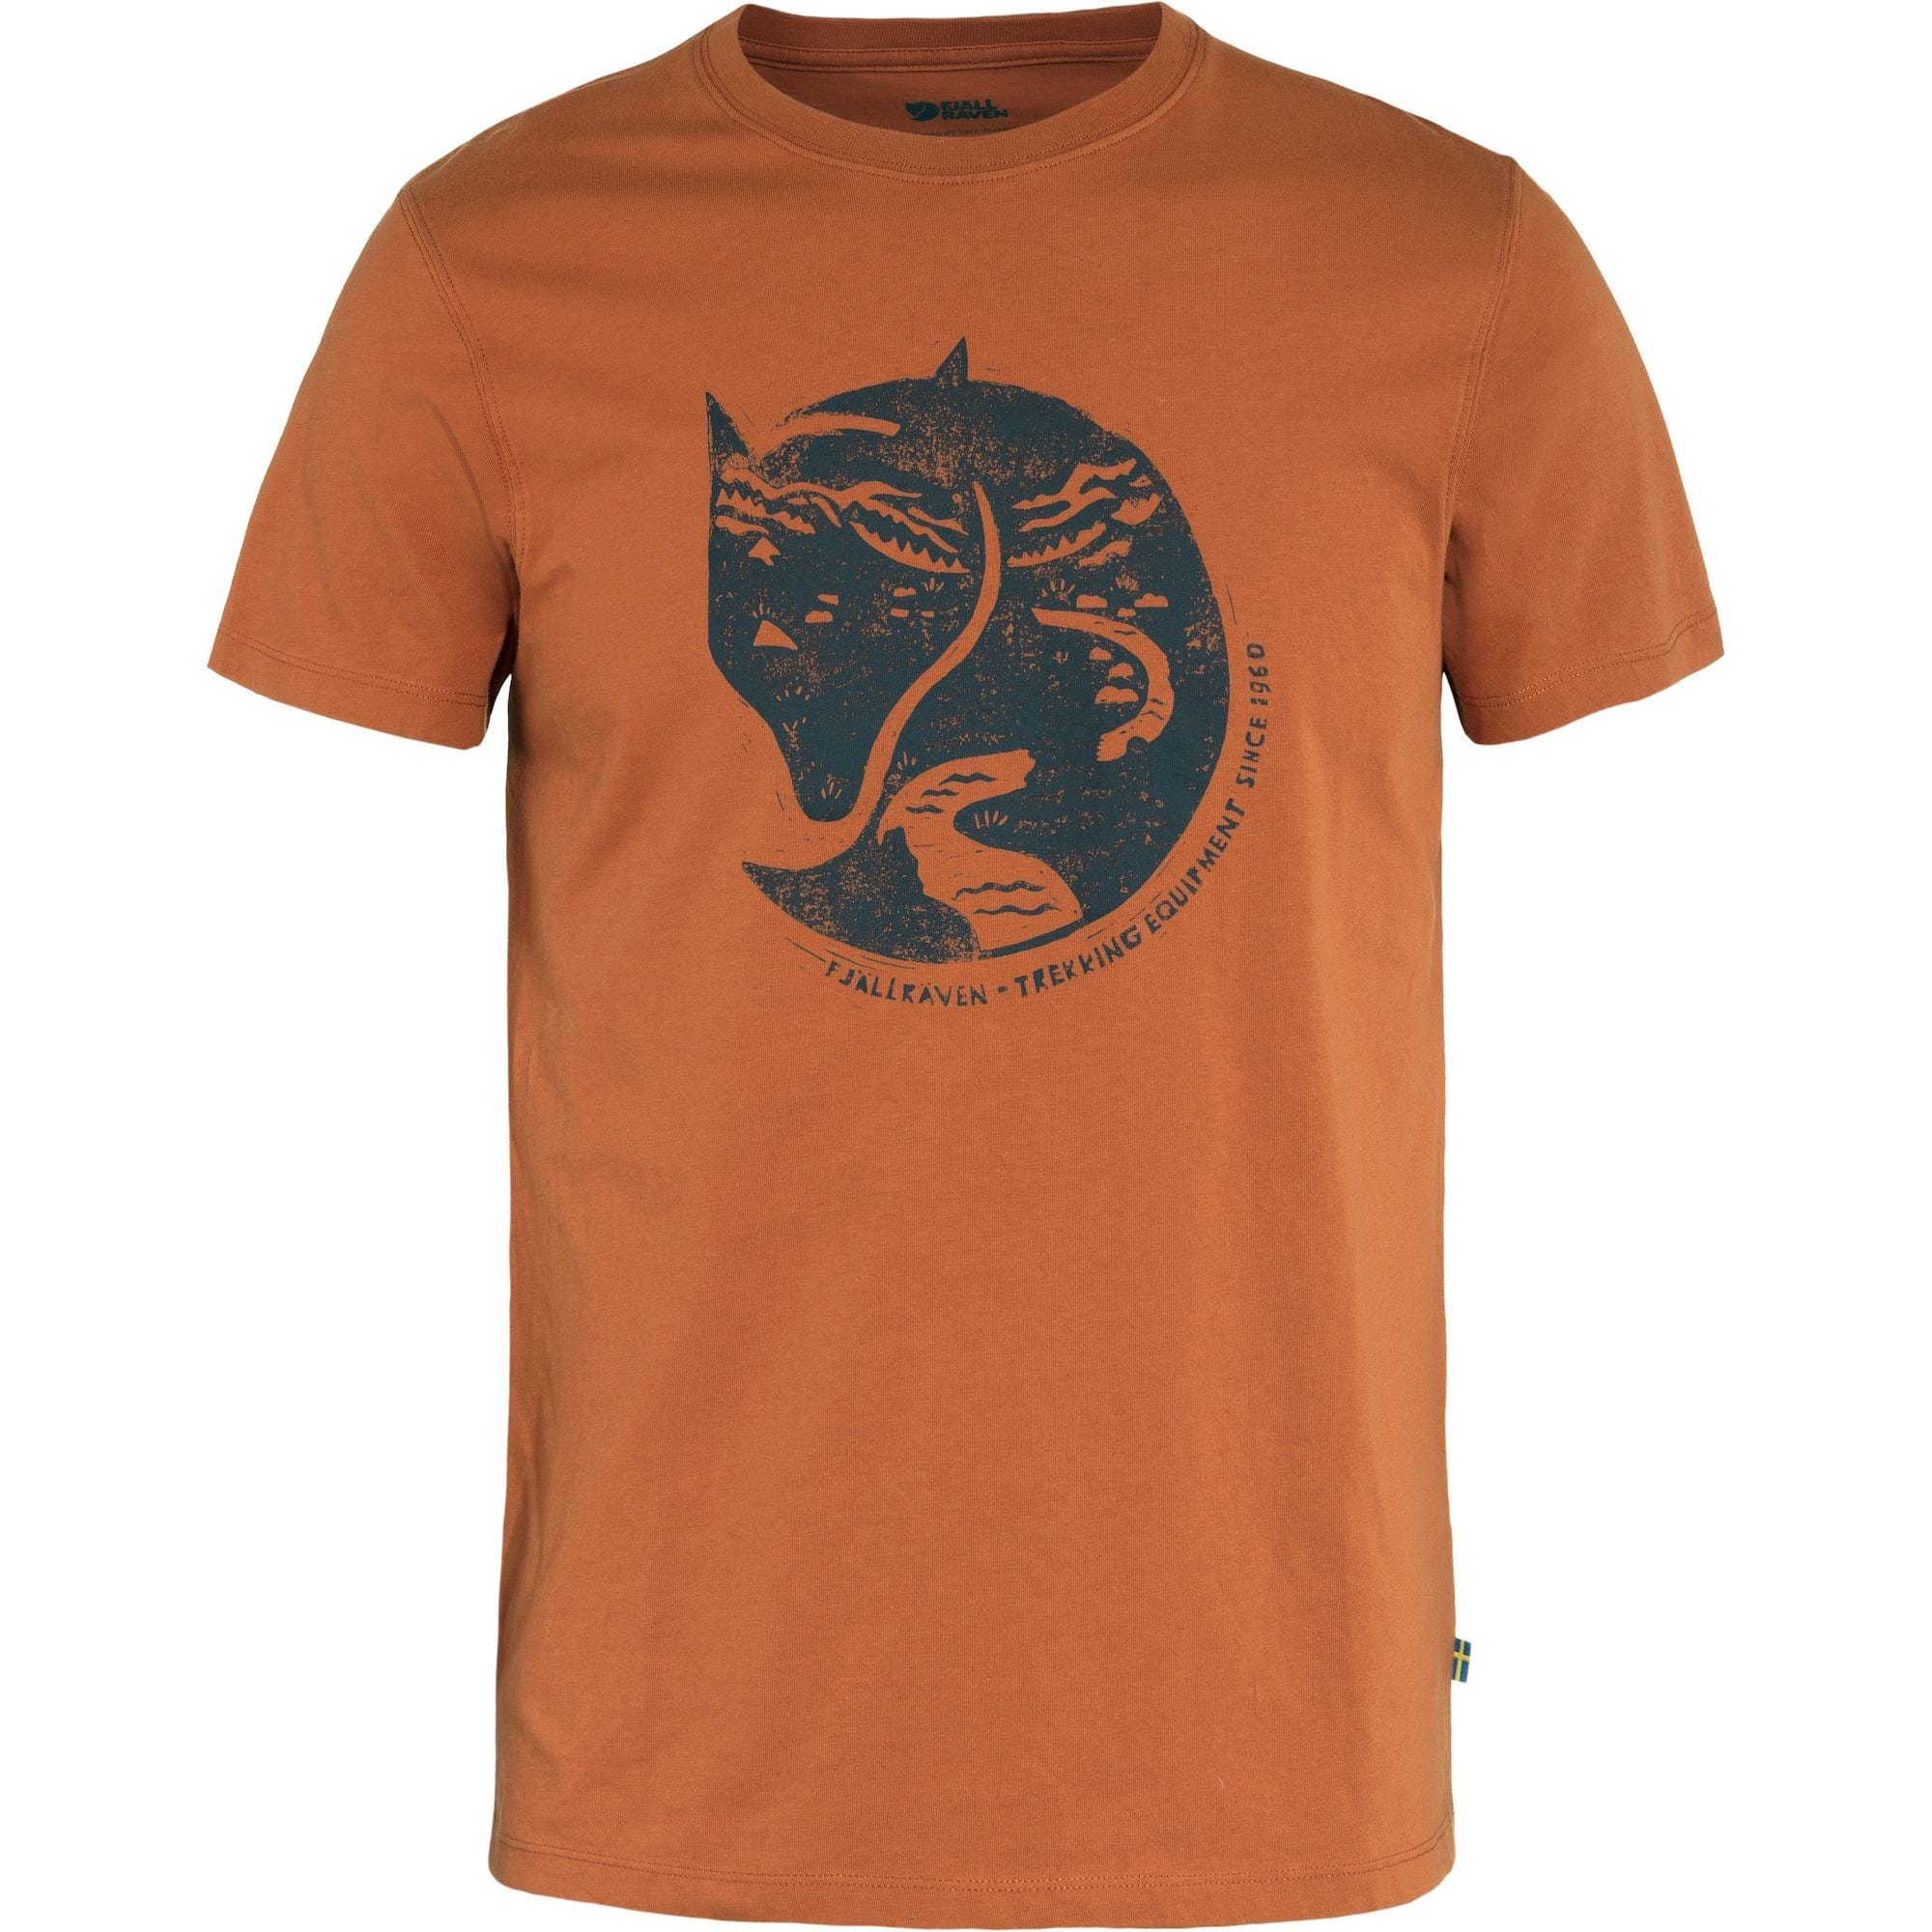 Fjällräven T-Shirt M / Terracotta Brown Fjällräven Arctic Fox T-shirt M